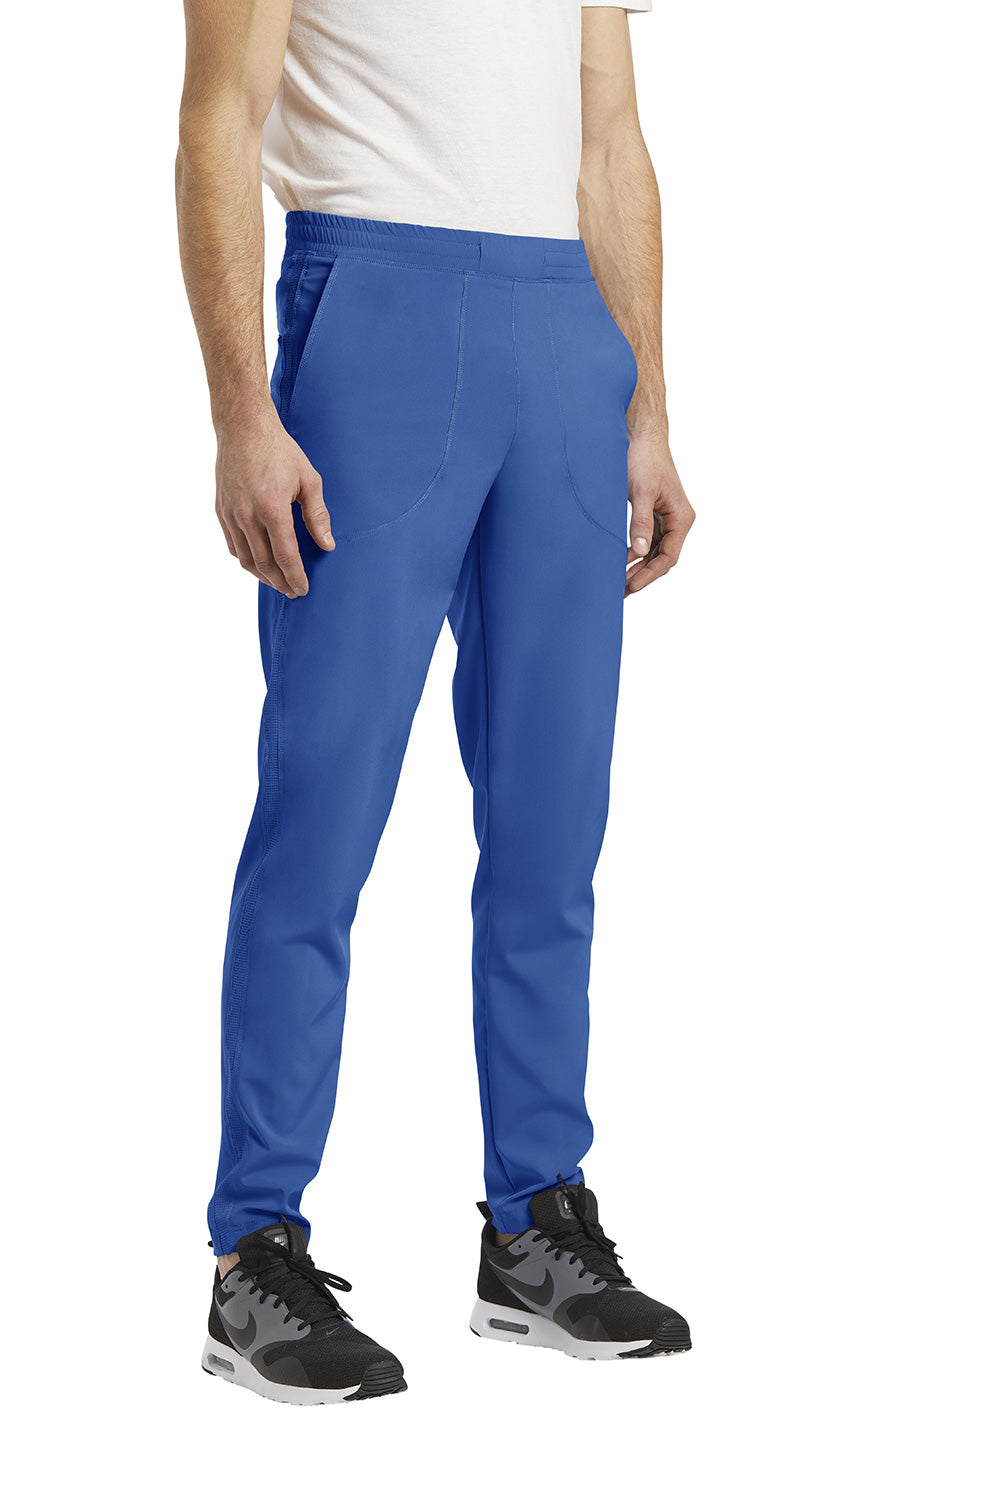 Pantalon de travail ajusté pour homme White Cross FIT #224 bleu royal